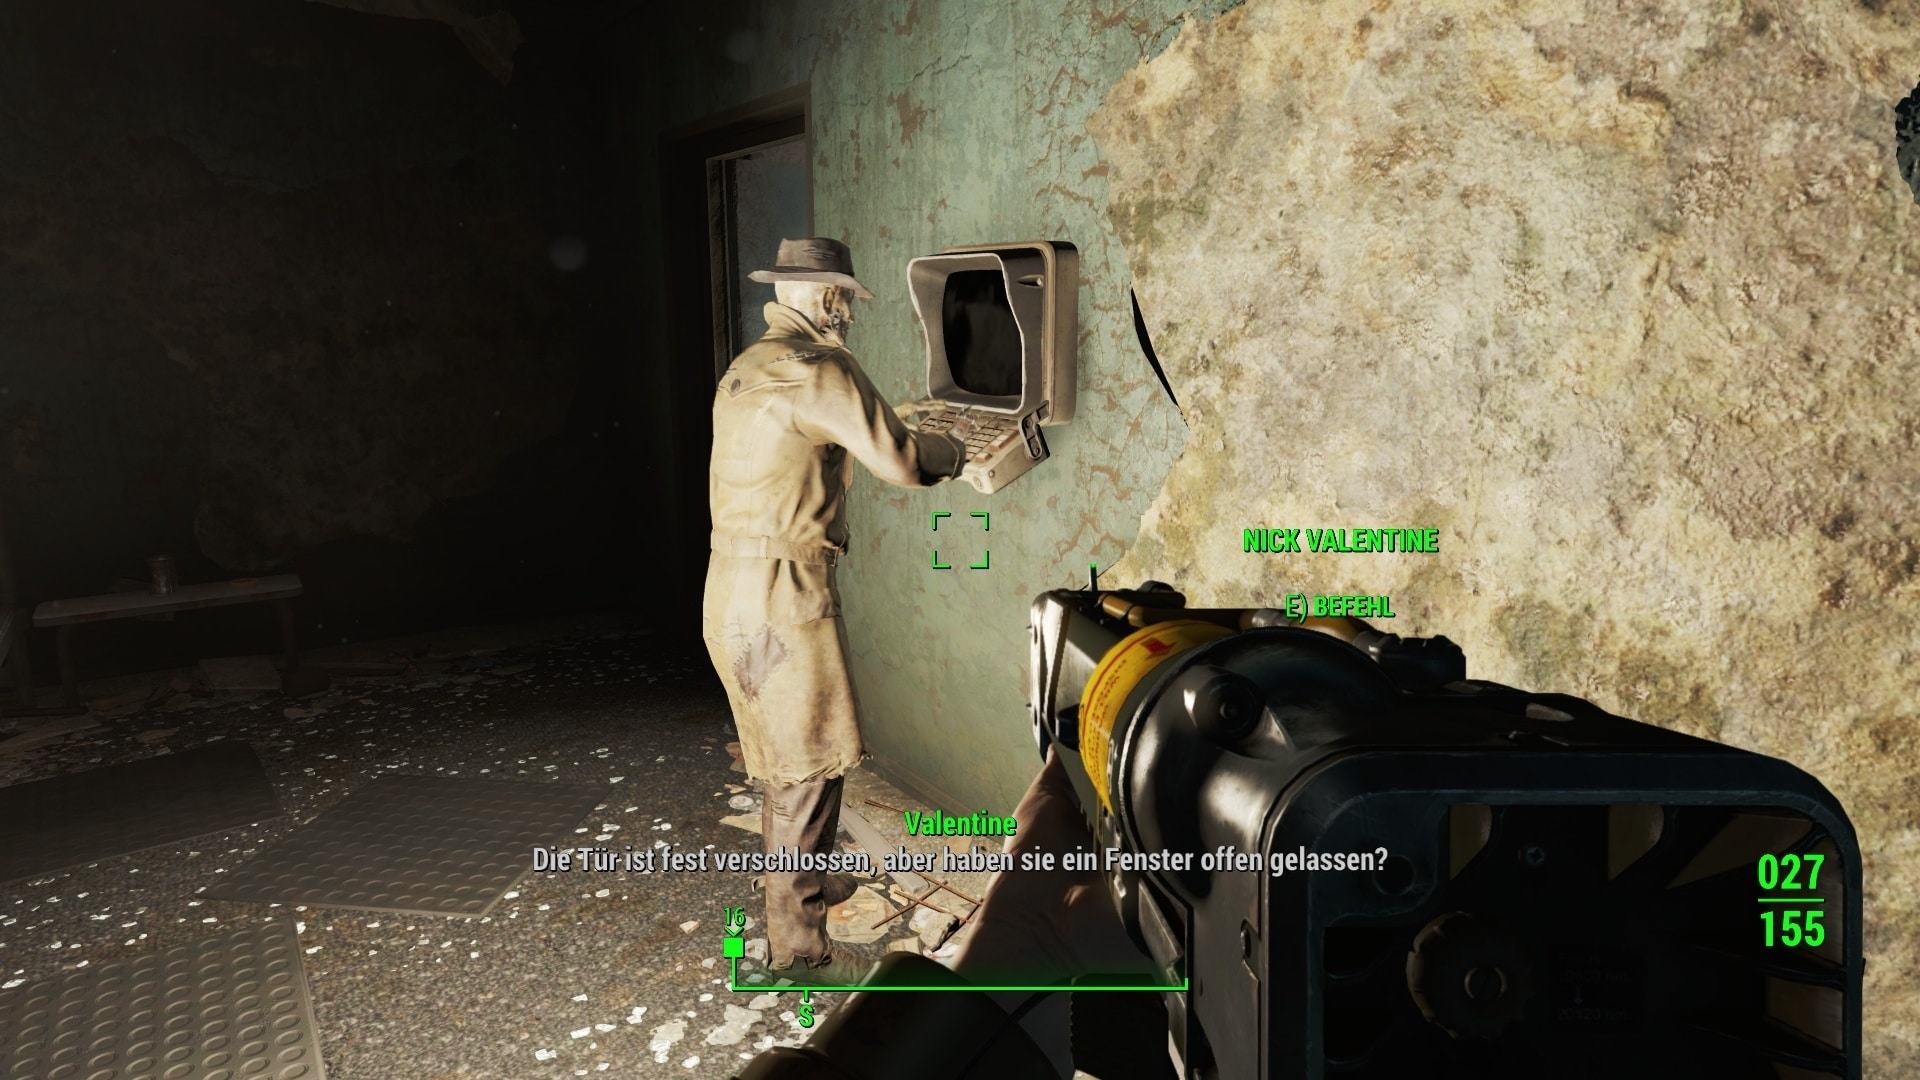 Co łączy Nicka Valentine'a z tajemniczym nieznajomym? W Fallout 4 przynajmniej obaj mają na sobie ten sam prochowiec.